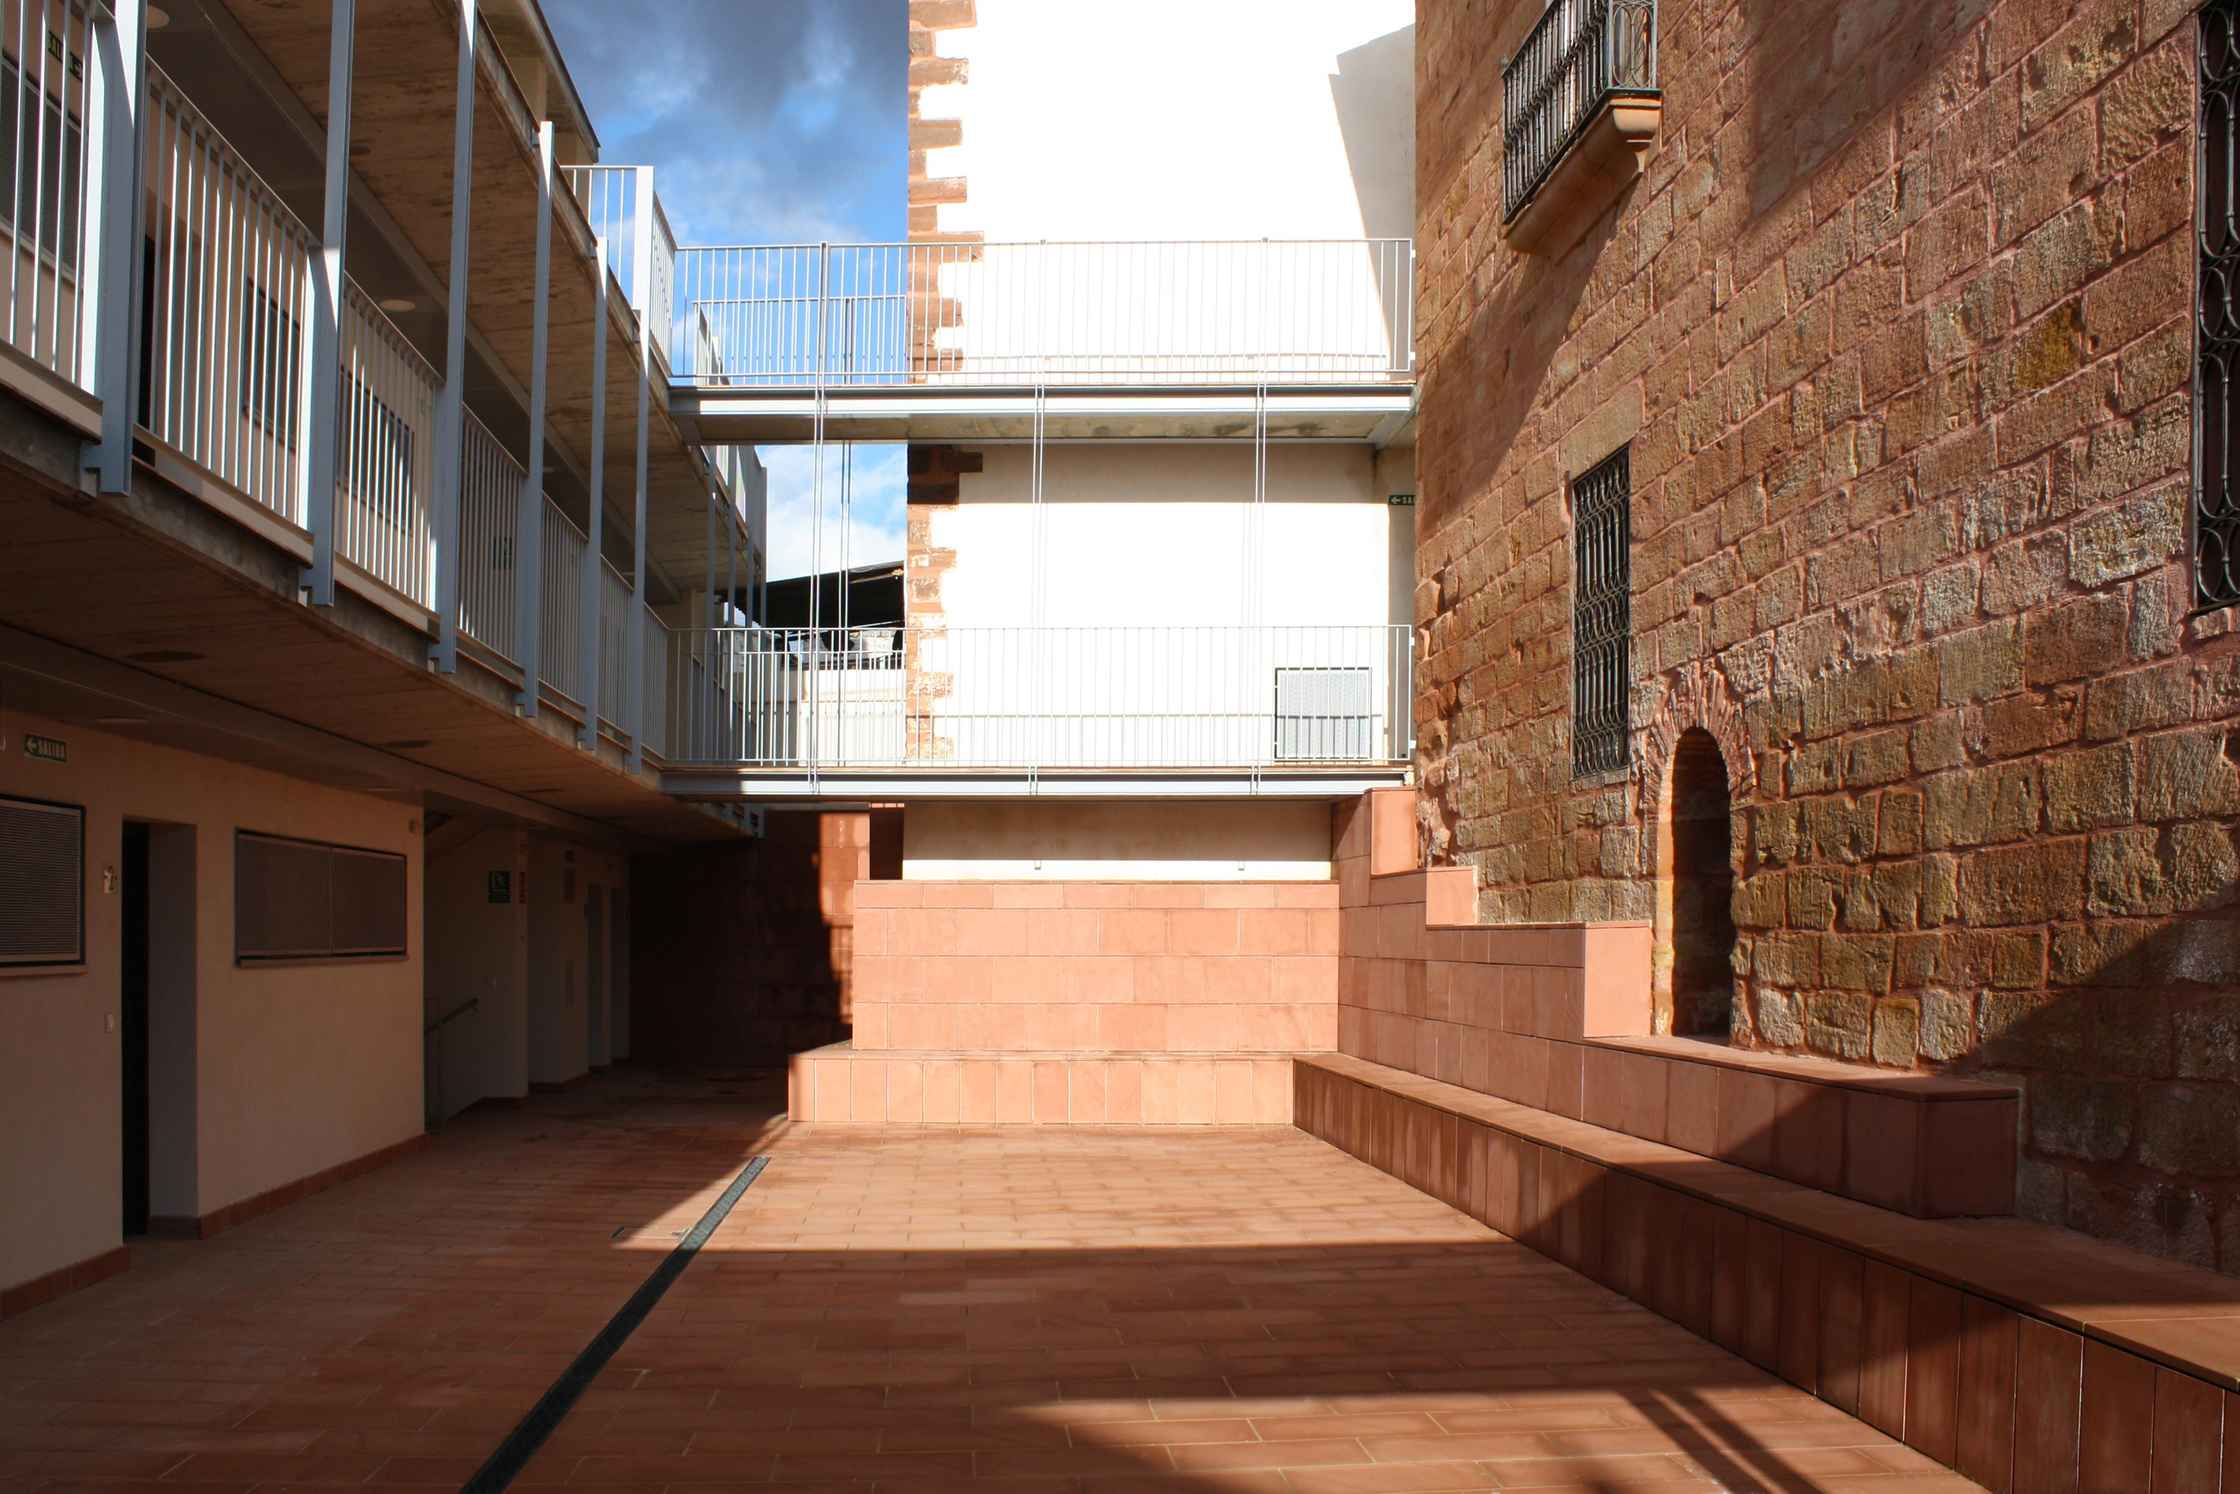 Promoción de viviendas en Montoro (Córdoba) con rehabilitación de Casa Palacio del S. XVIII y obra  de nueva planta. Arquitectura contemporánea e histórica en un único proyecto de LAP arquitectos.